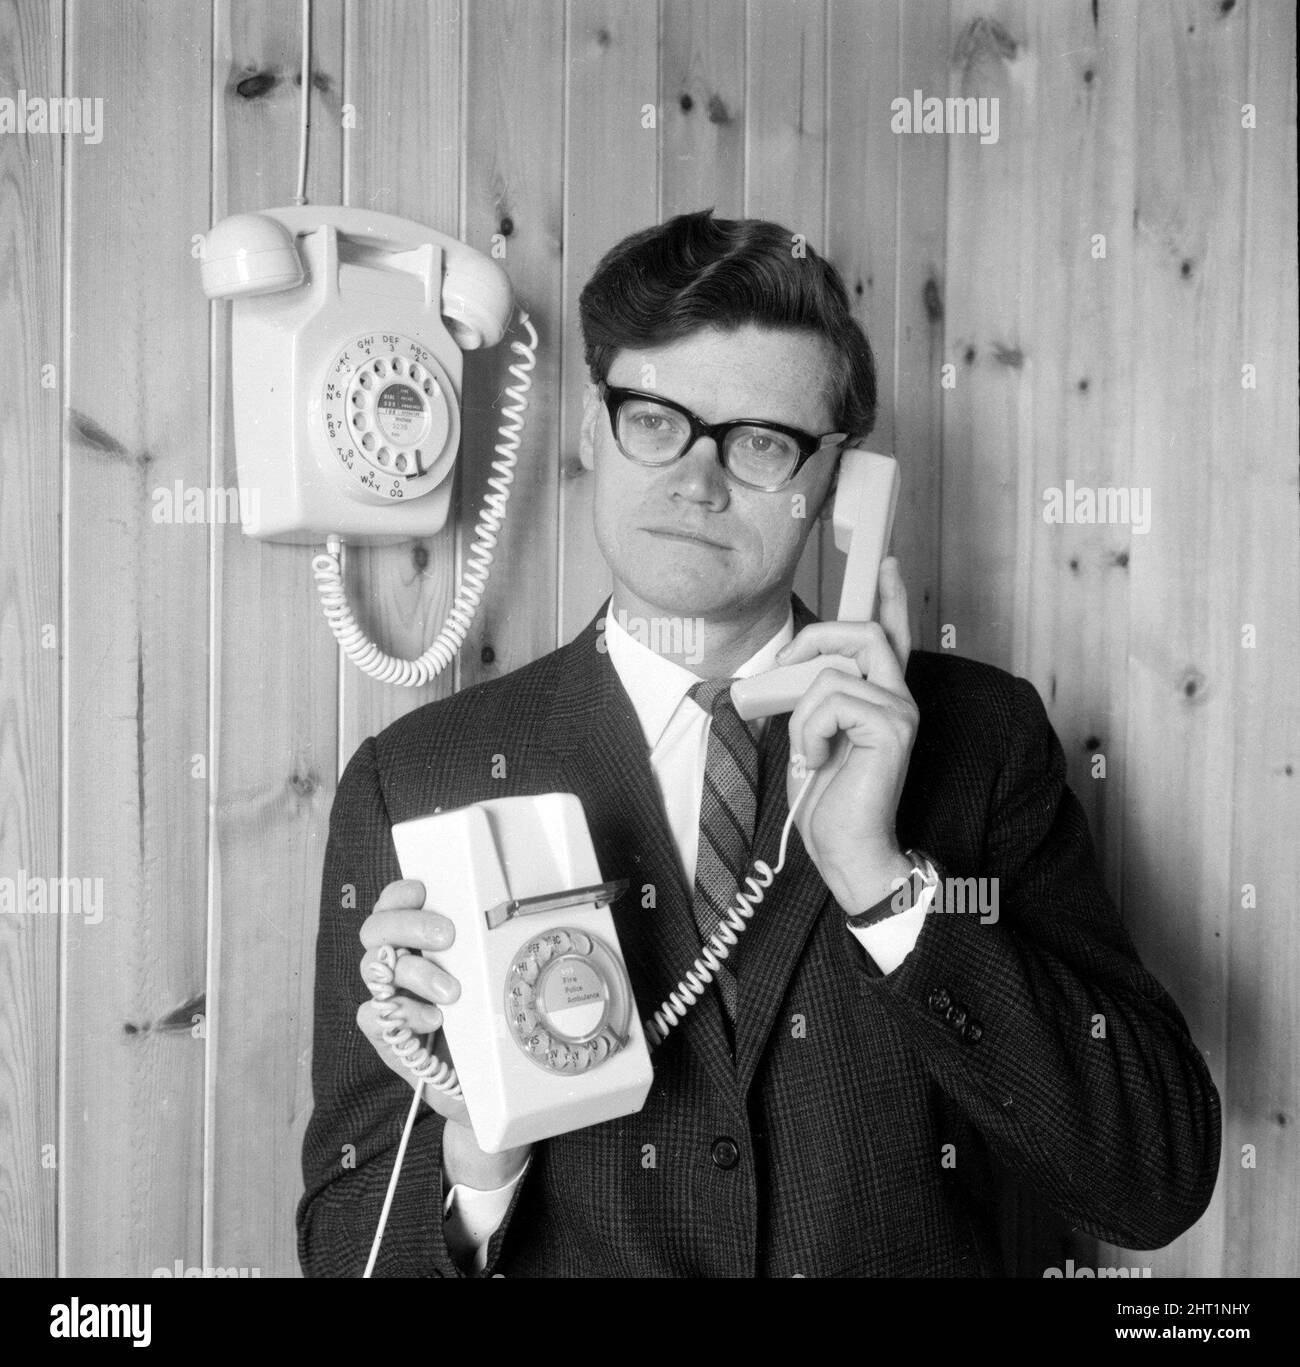 Arthur Smith dimostra il nuovo trimmone, a differenza di un telefono Dial montato sul muro maggio 1966. Invenzioni di comunicazione Telecomunicazioni Foto Stock